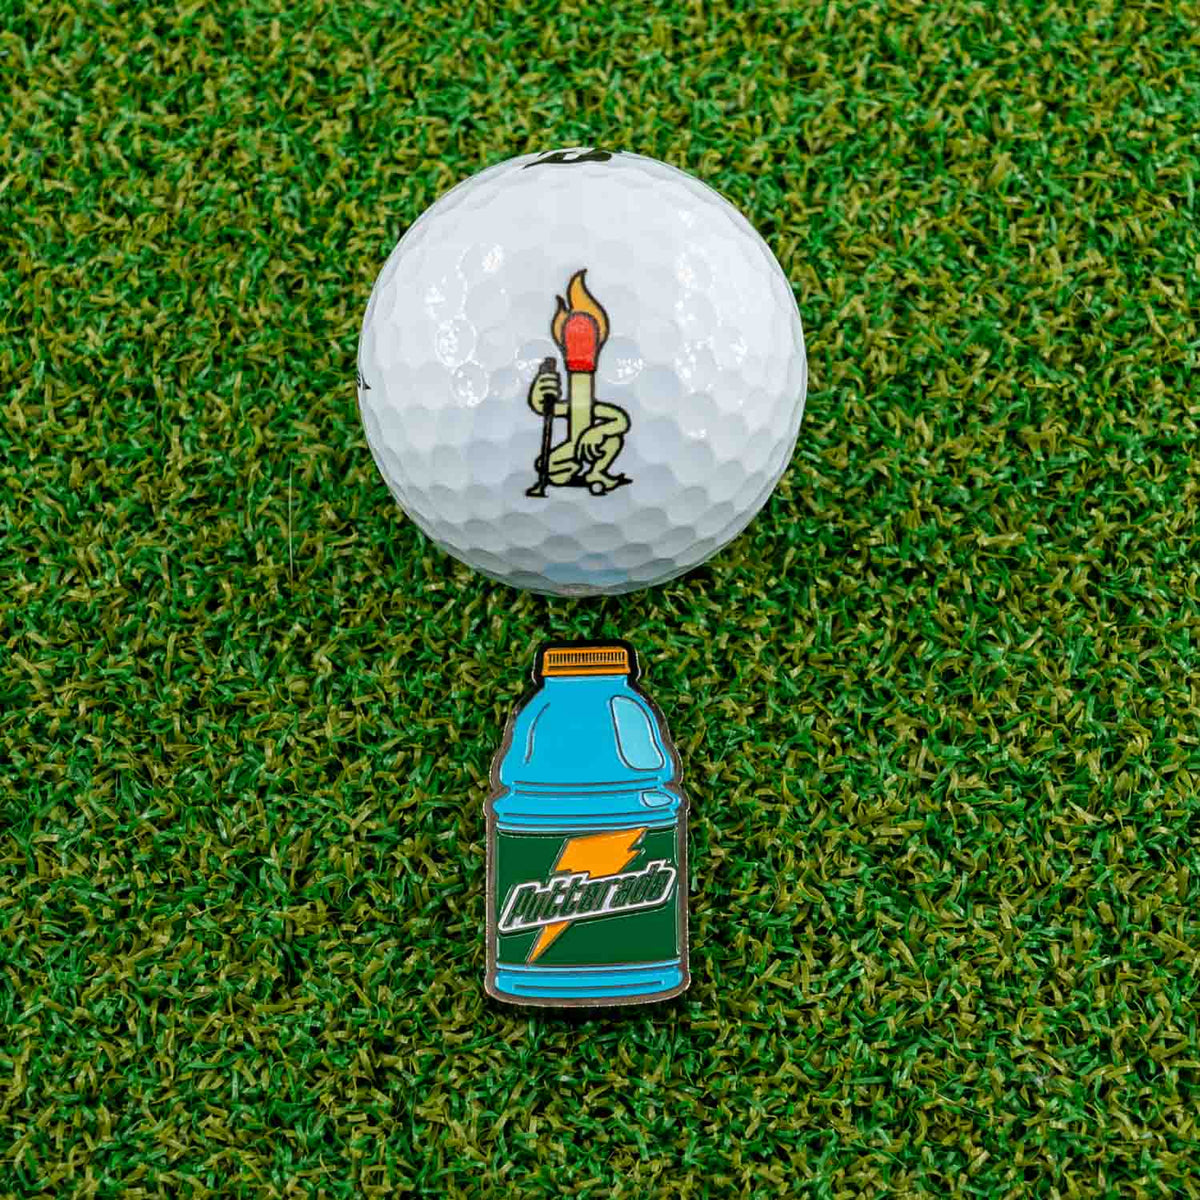 putterade golf ball marker gatorade blue frost grass with ball